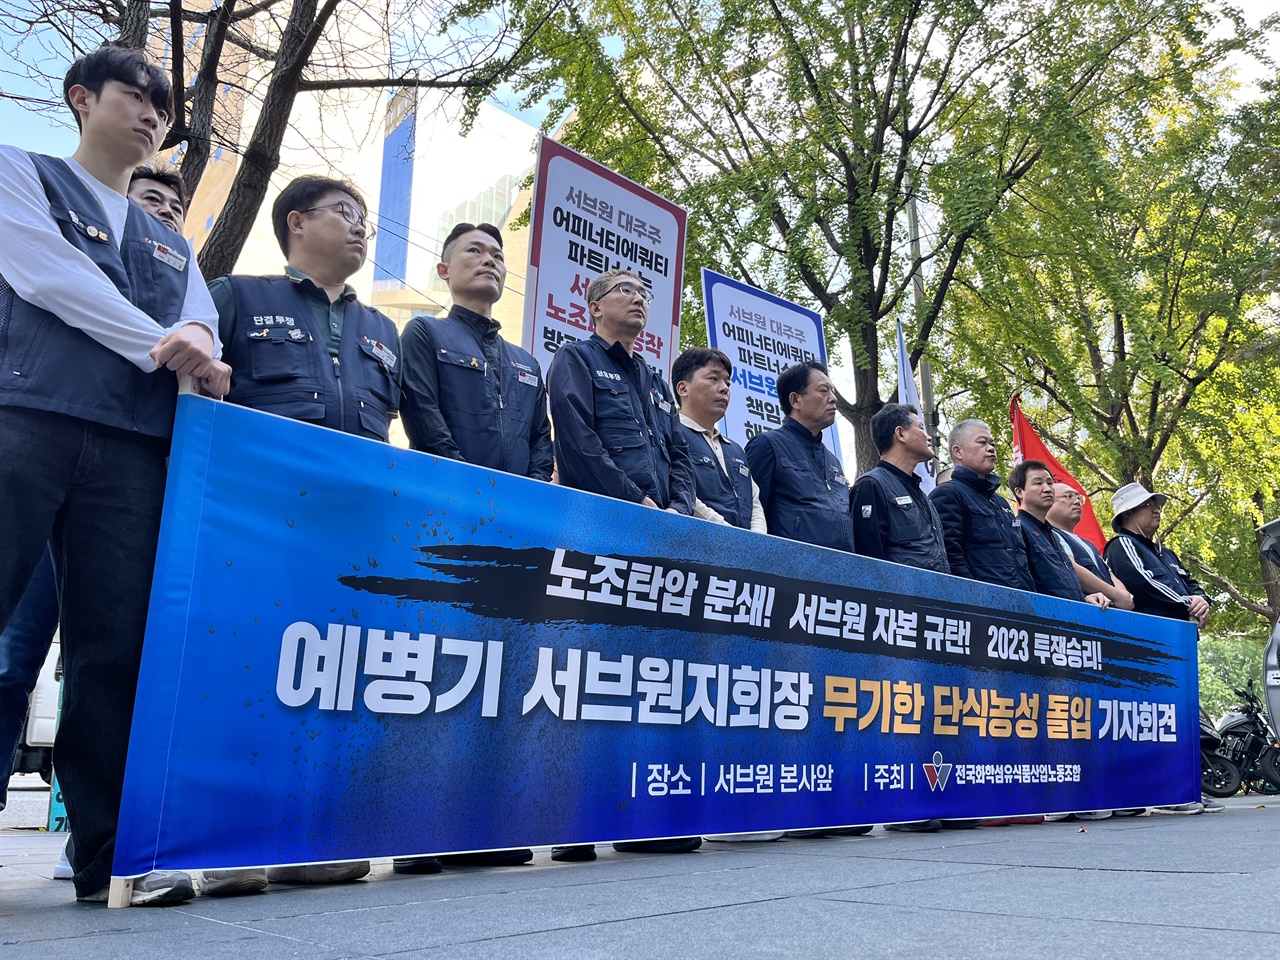 화섬식품노조가 4일 오전 11시 서울 중구 서브원 본사 앞에서 기자회견을 열었다.